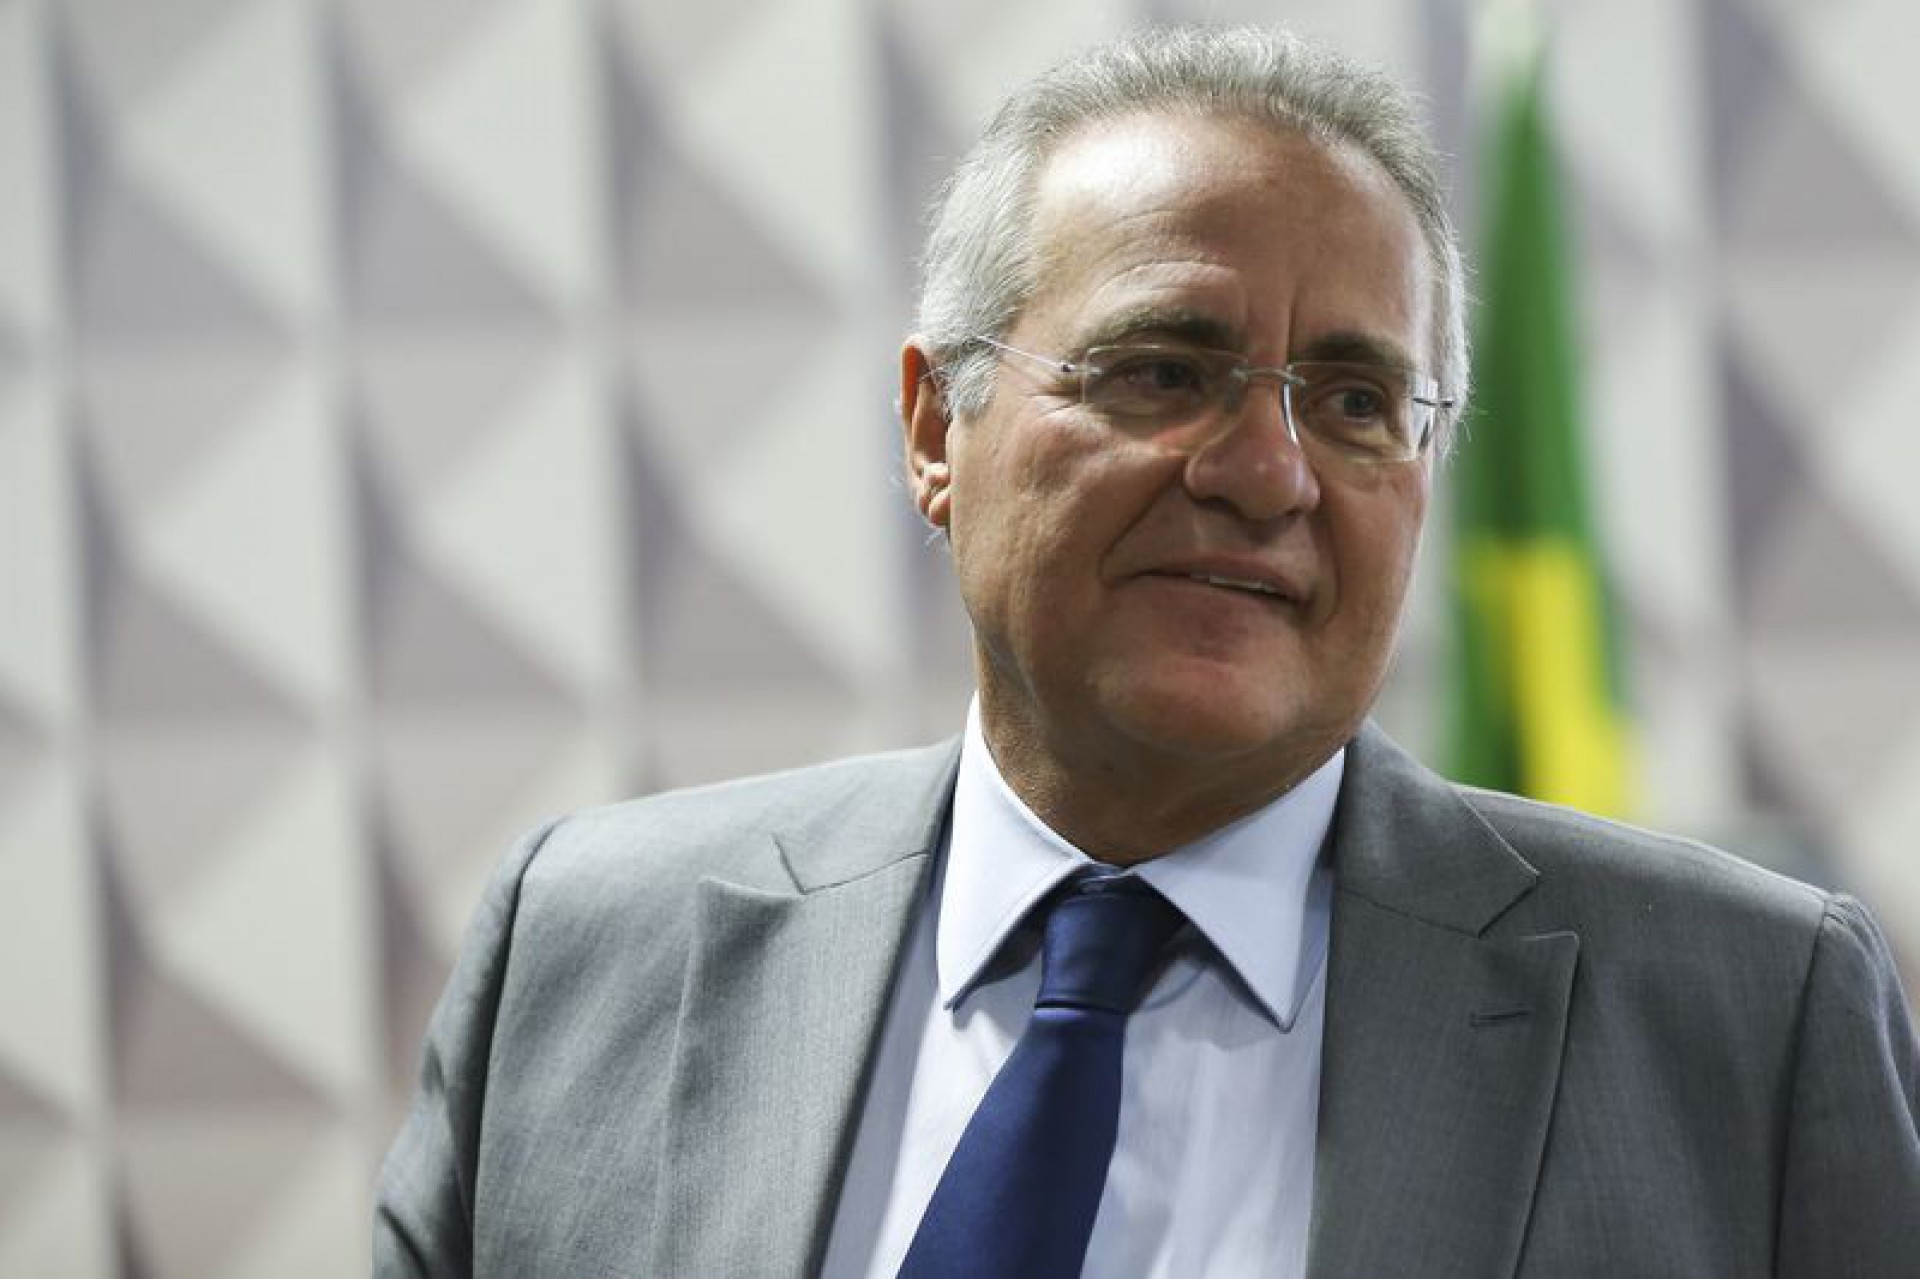  Renan Calheiros, senador (Foto: Marcelo Camargo/Agência Brasil)